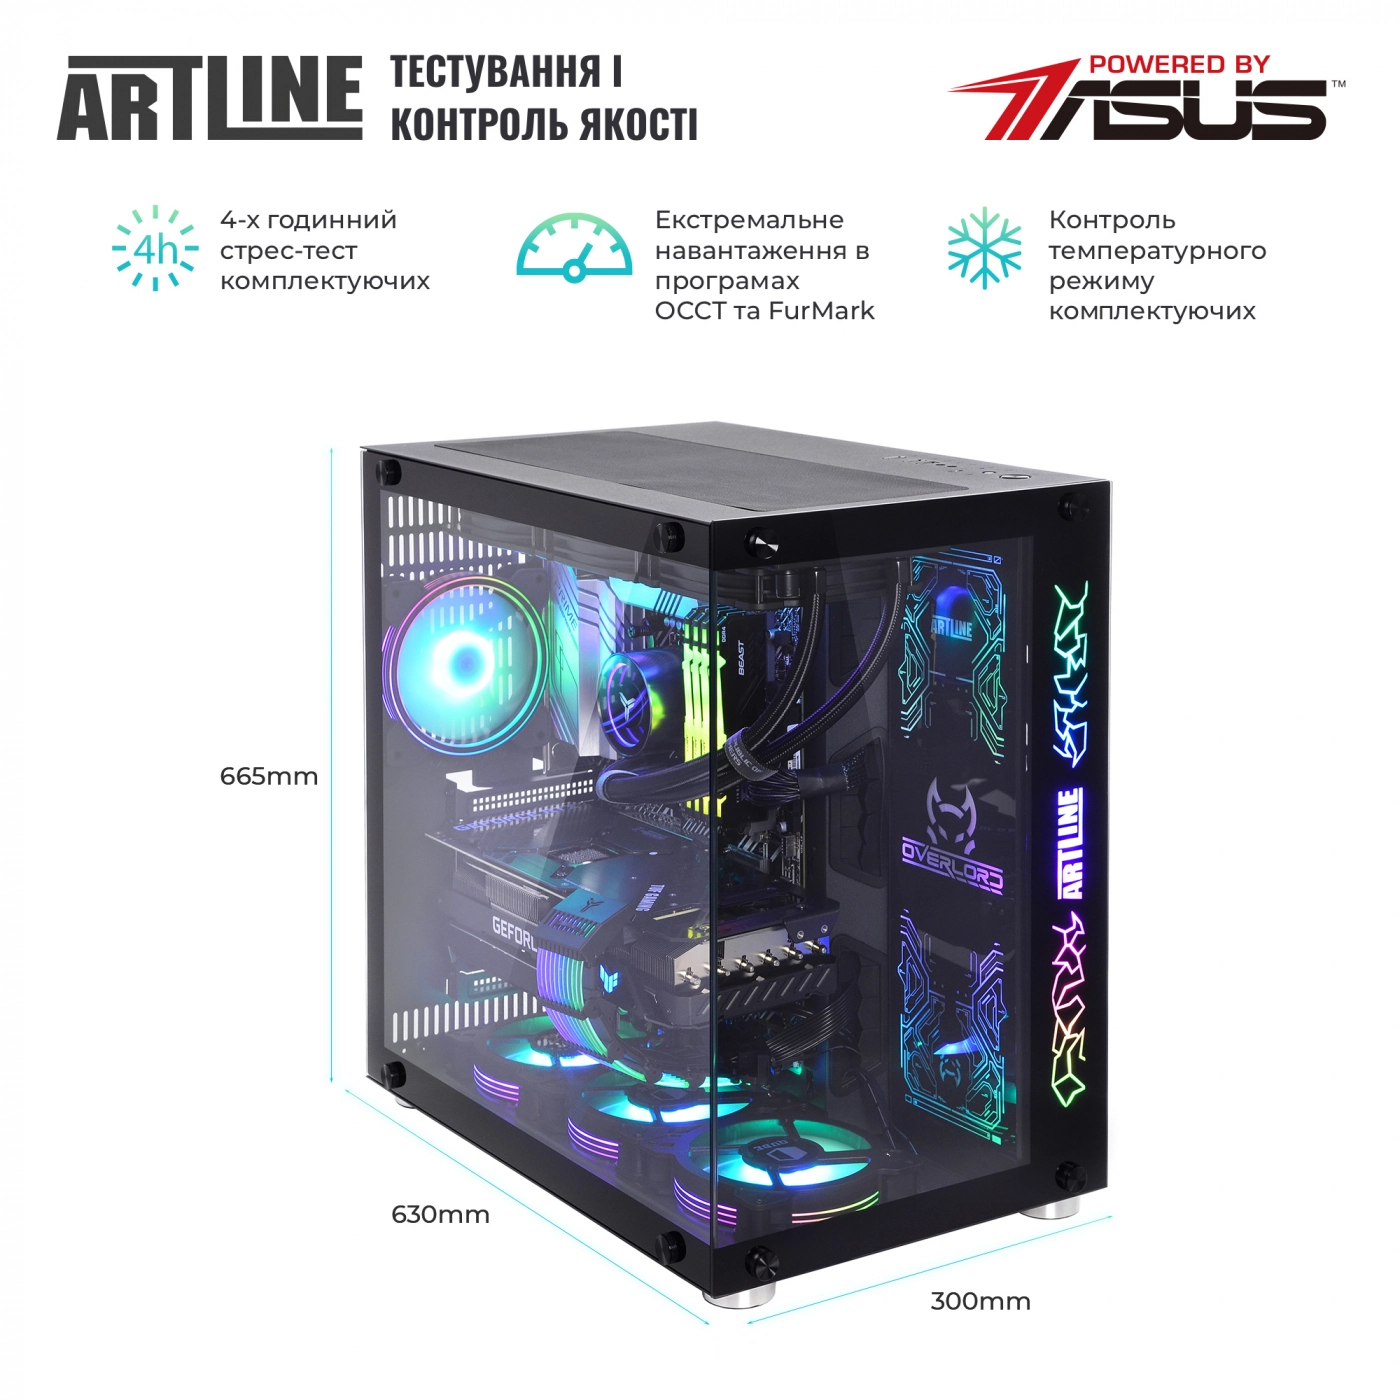 Купить Компьютер ARTLINE Gaming X99v53 - фото 9